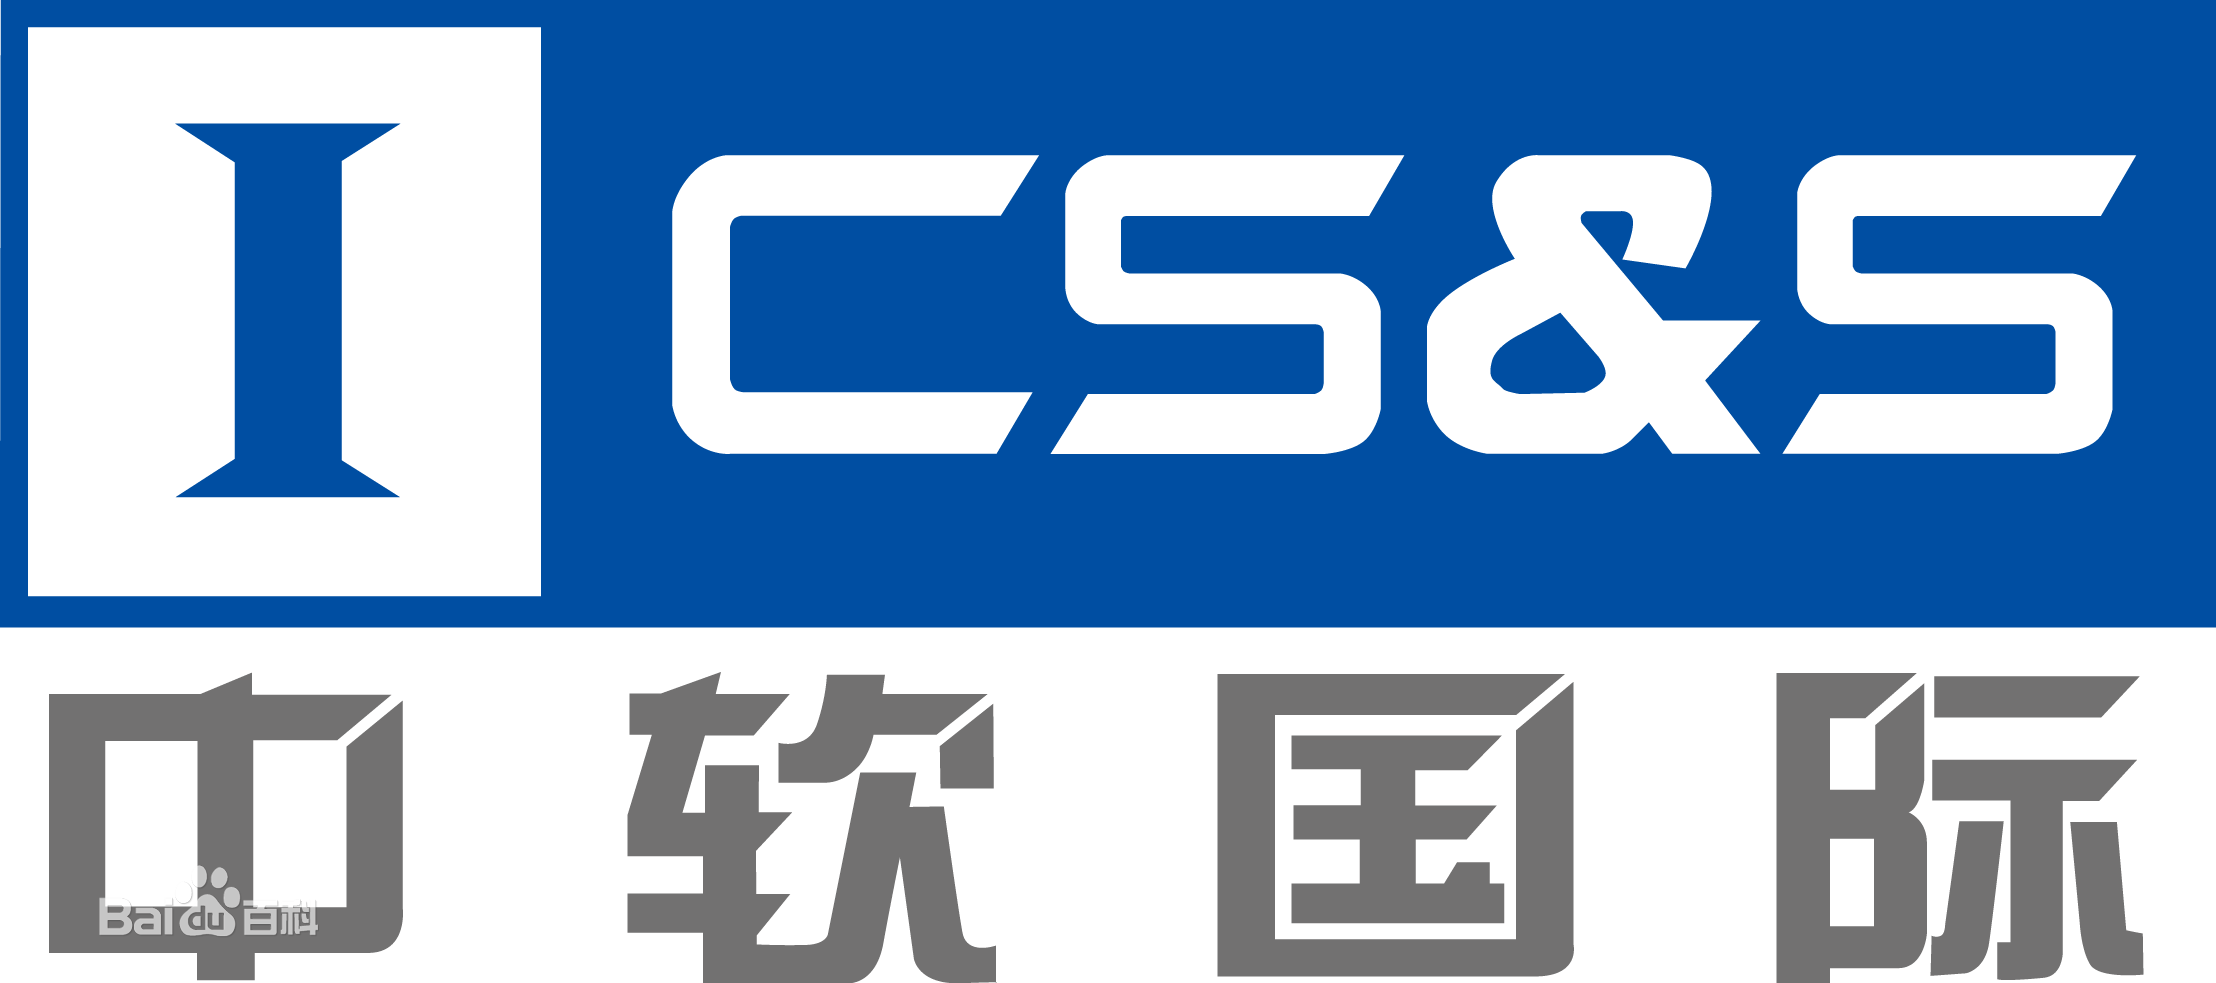 中软国际有限公司的logo